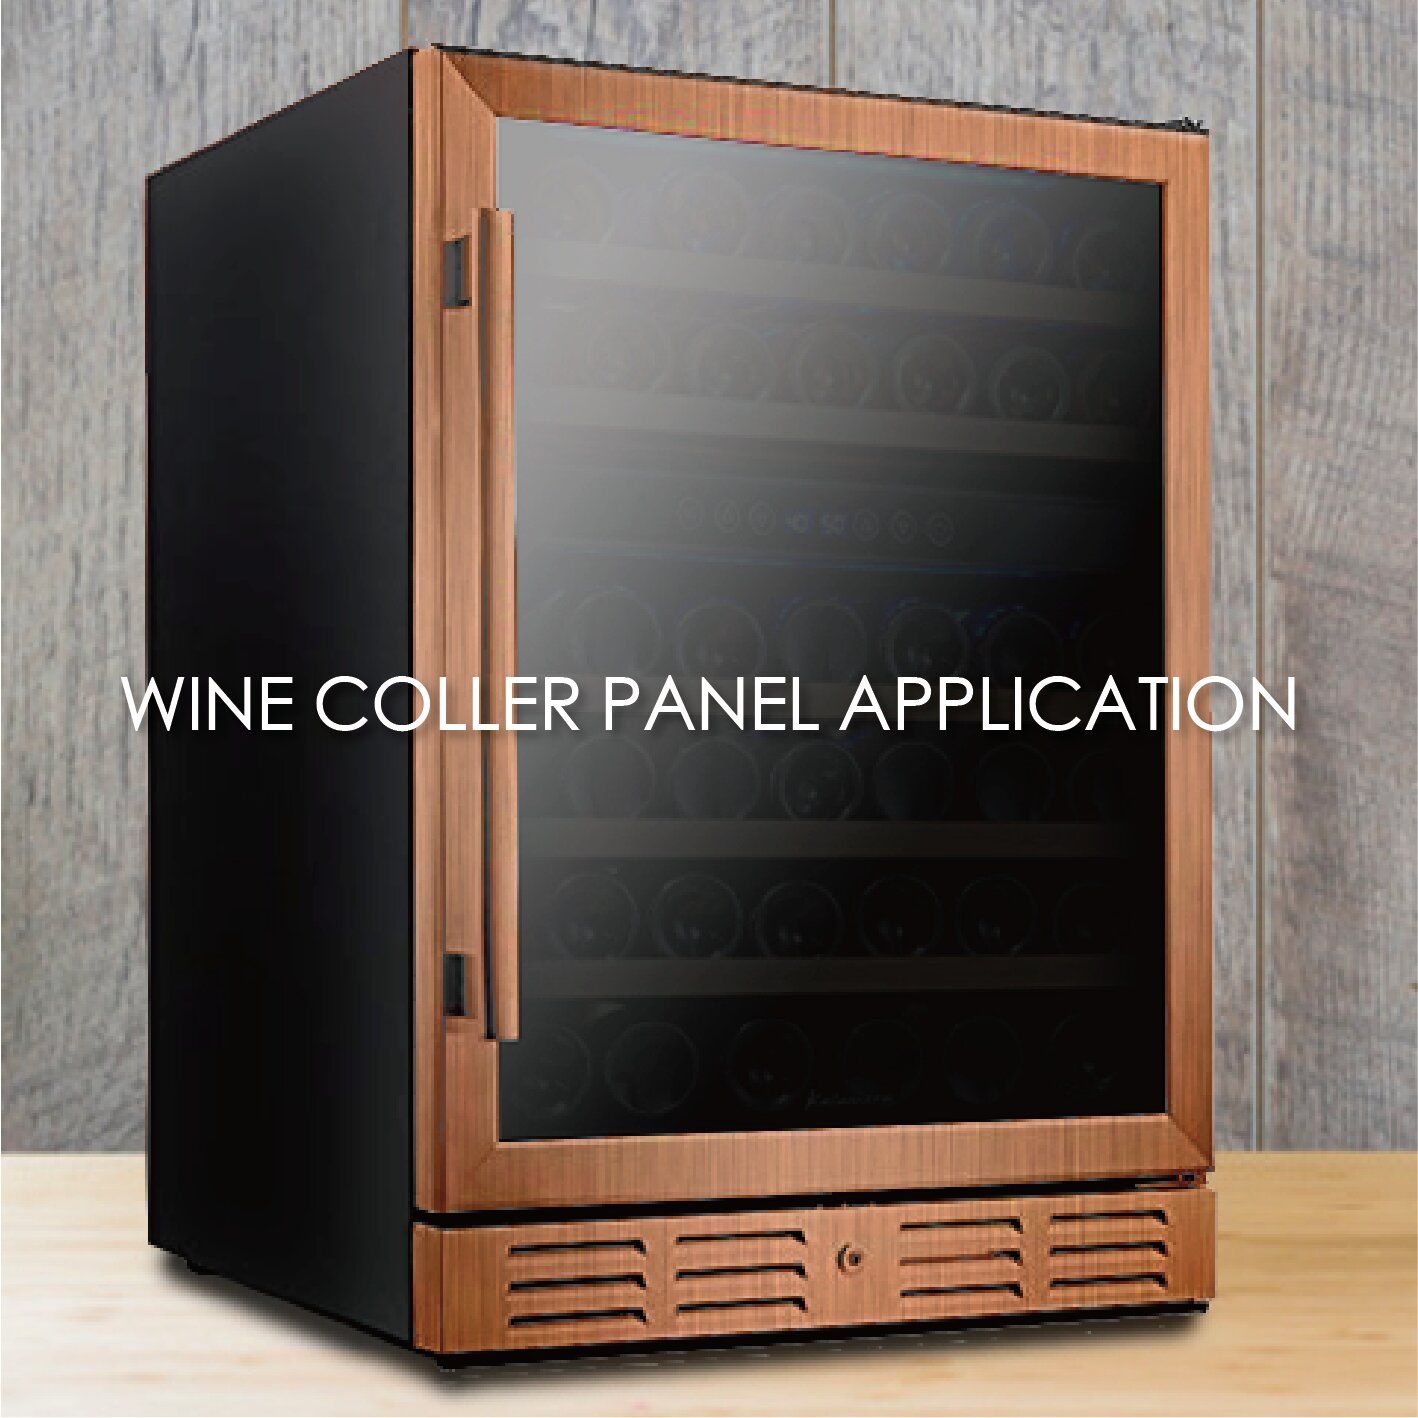 El uso de metal recubierto con textura de madera para fabricar paneles de enfriadores de vino puede aumentar la estética y durabilidad